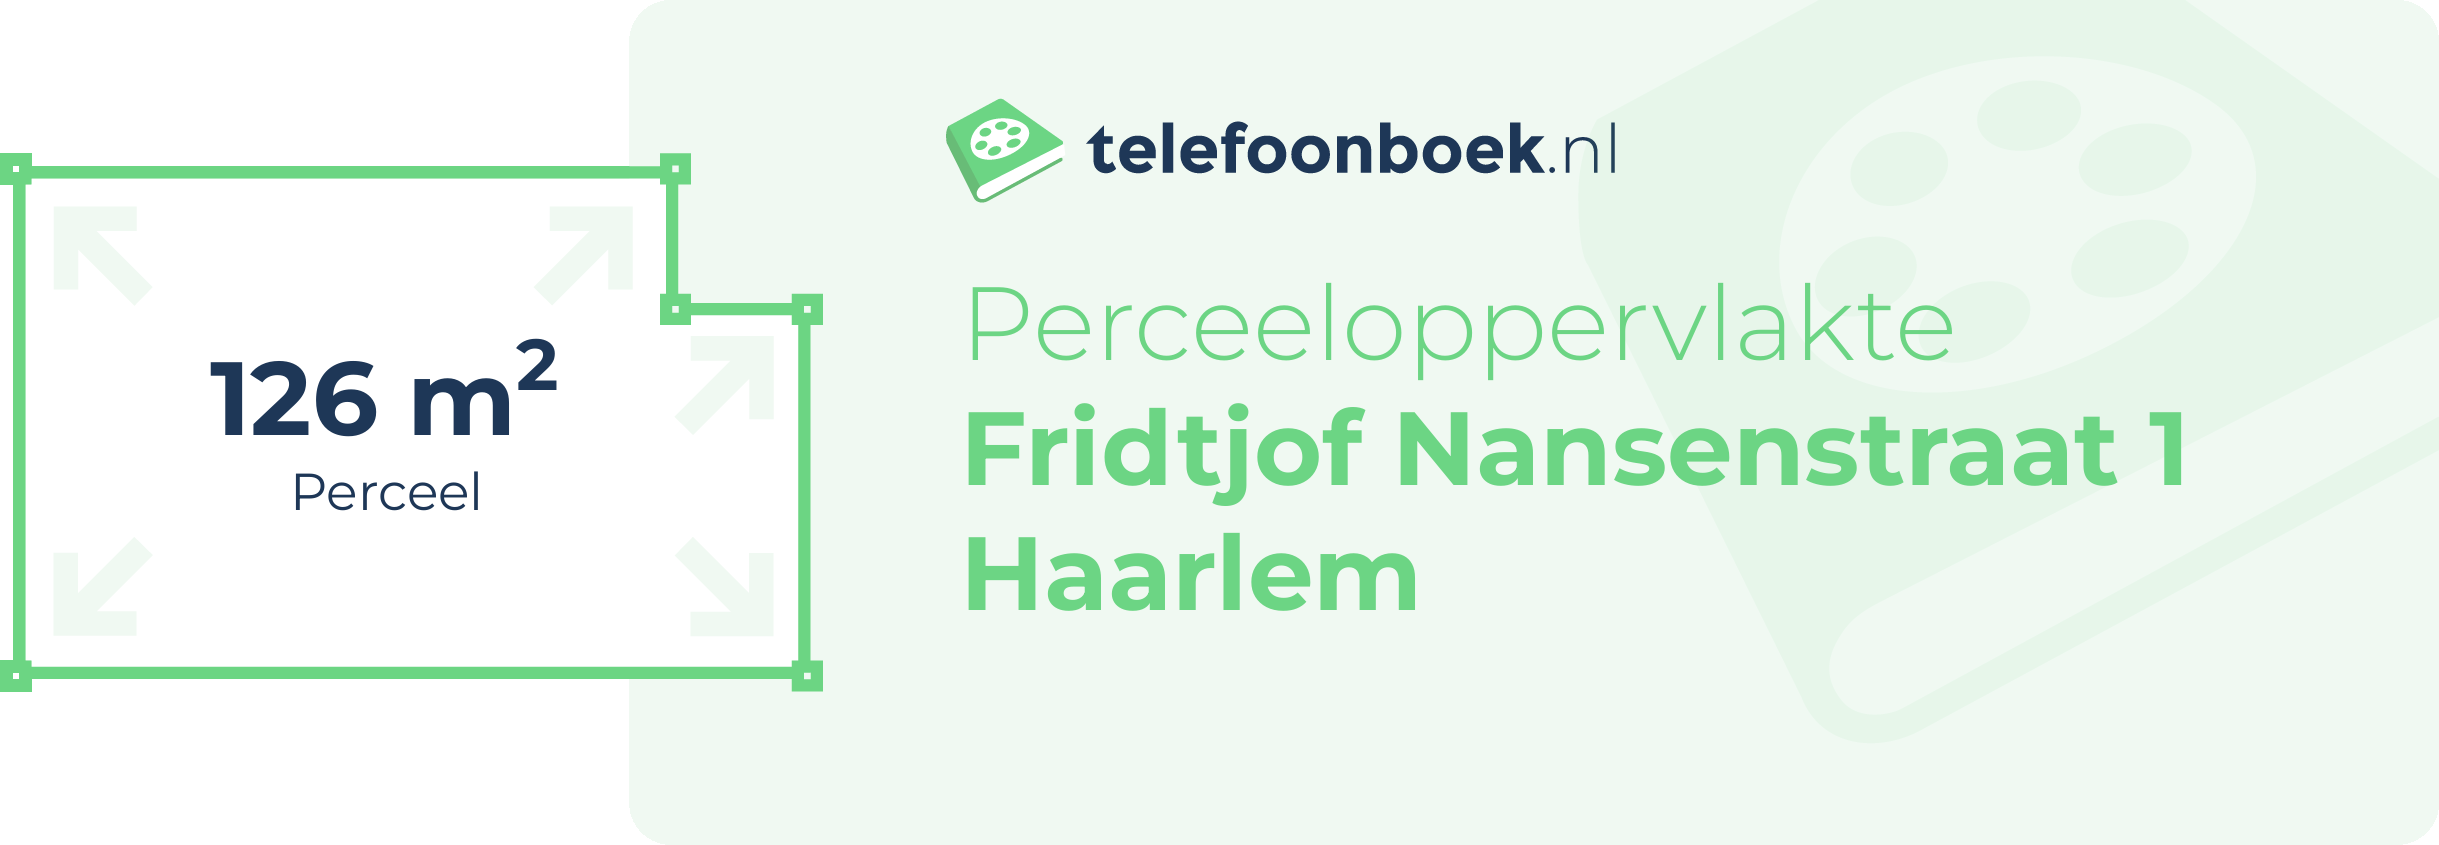 Perceeloppervlakte Fridtjof Nansenstraat 1 Haarlem